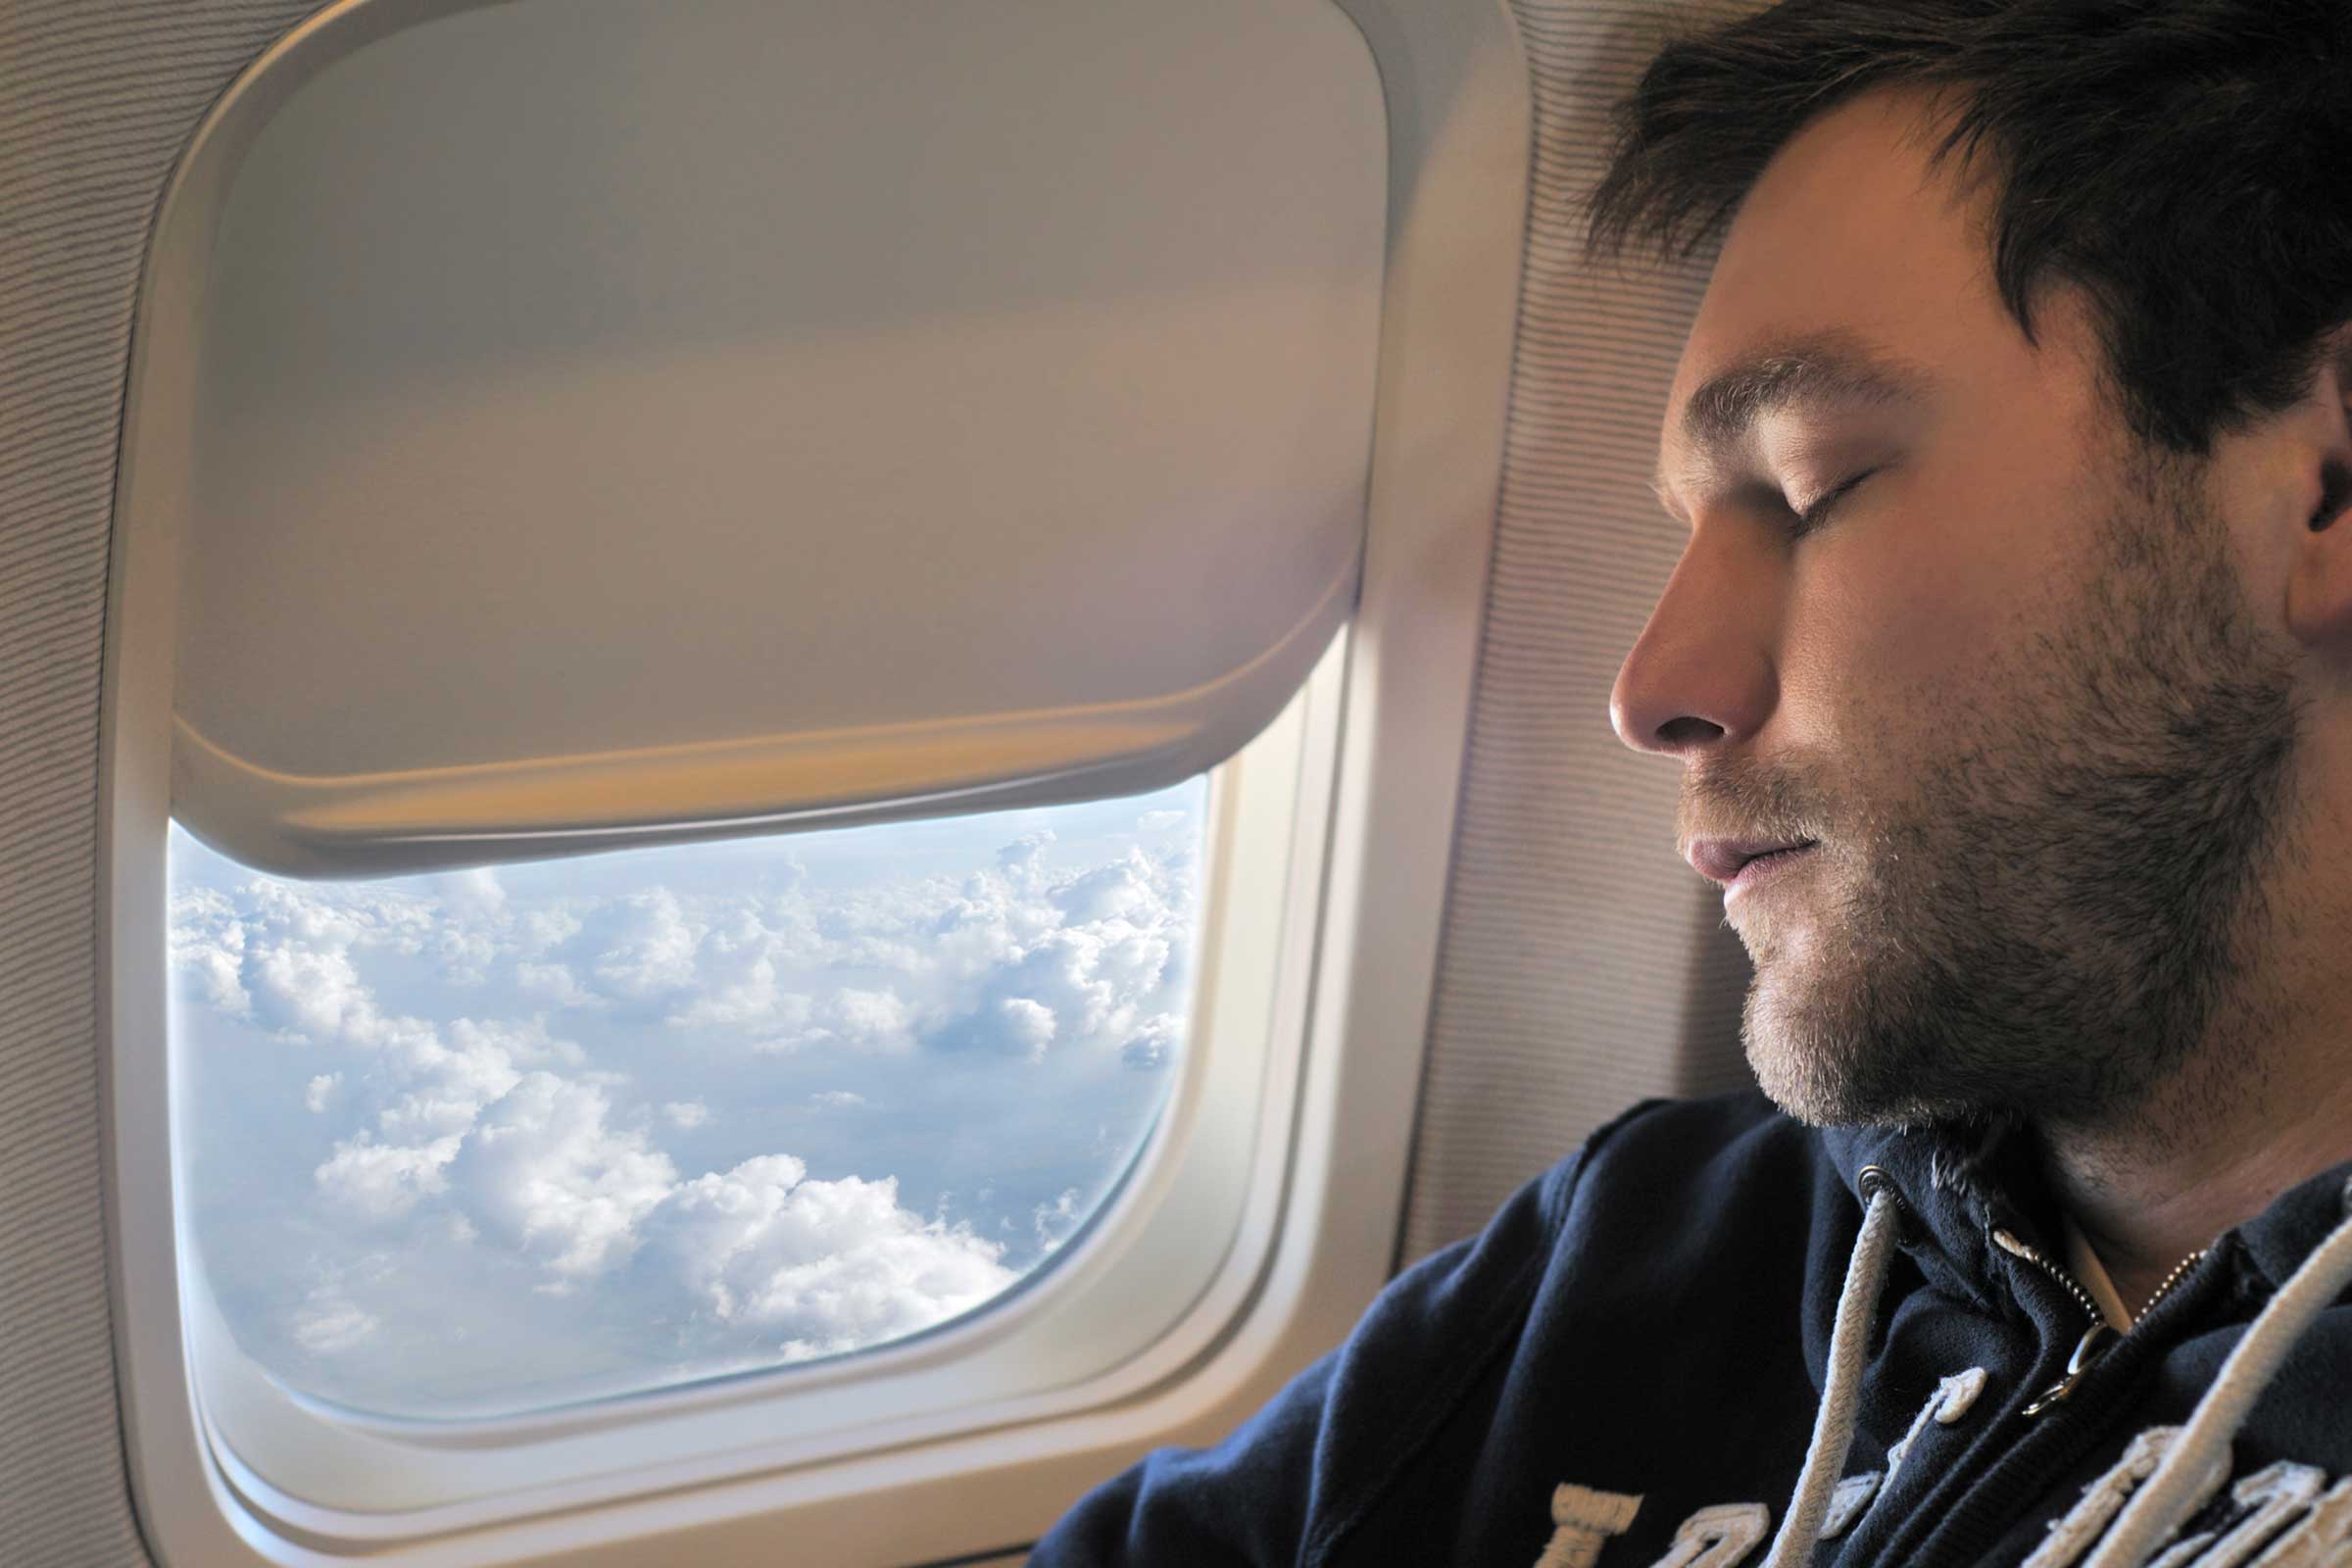 از خوابیدن هنگام تغییر ارتفاع هواپیما خودداری کنید/با خوابیدن عضله بسازید/سالاد بخورید تا سکته قلبی نکنید!/غذایی که باعث حلقه های تیره زیر چشم می شوند